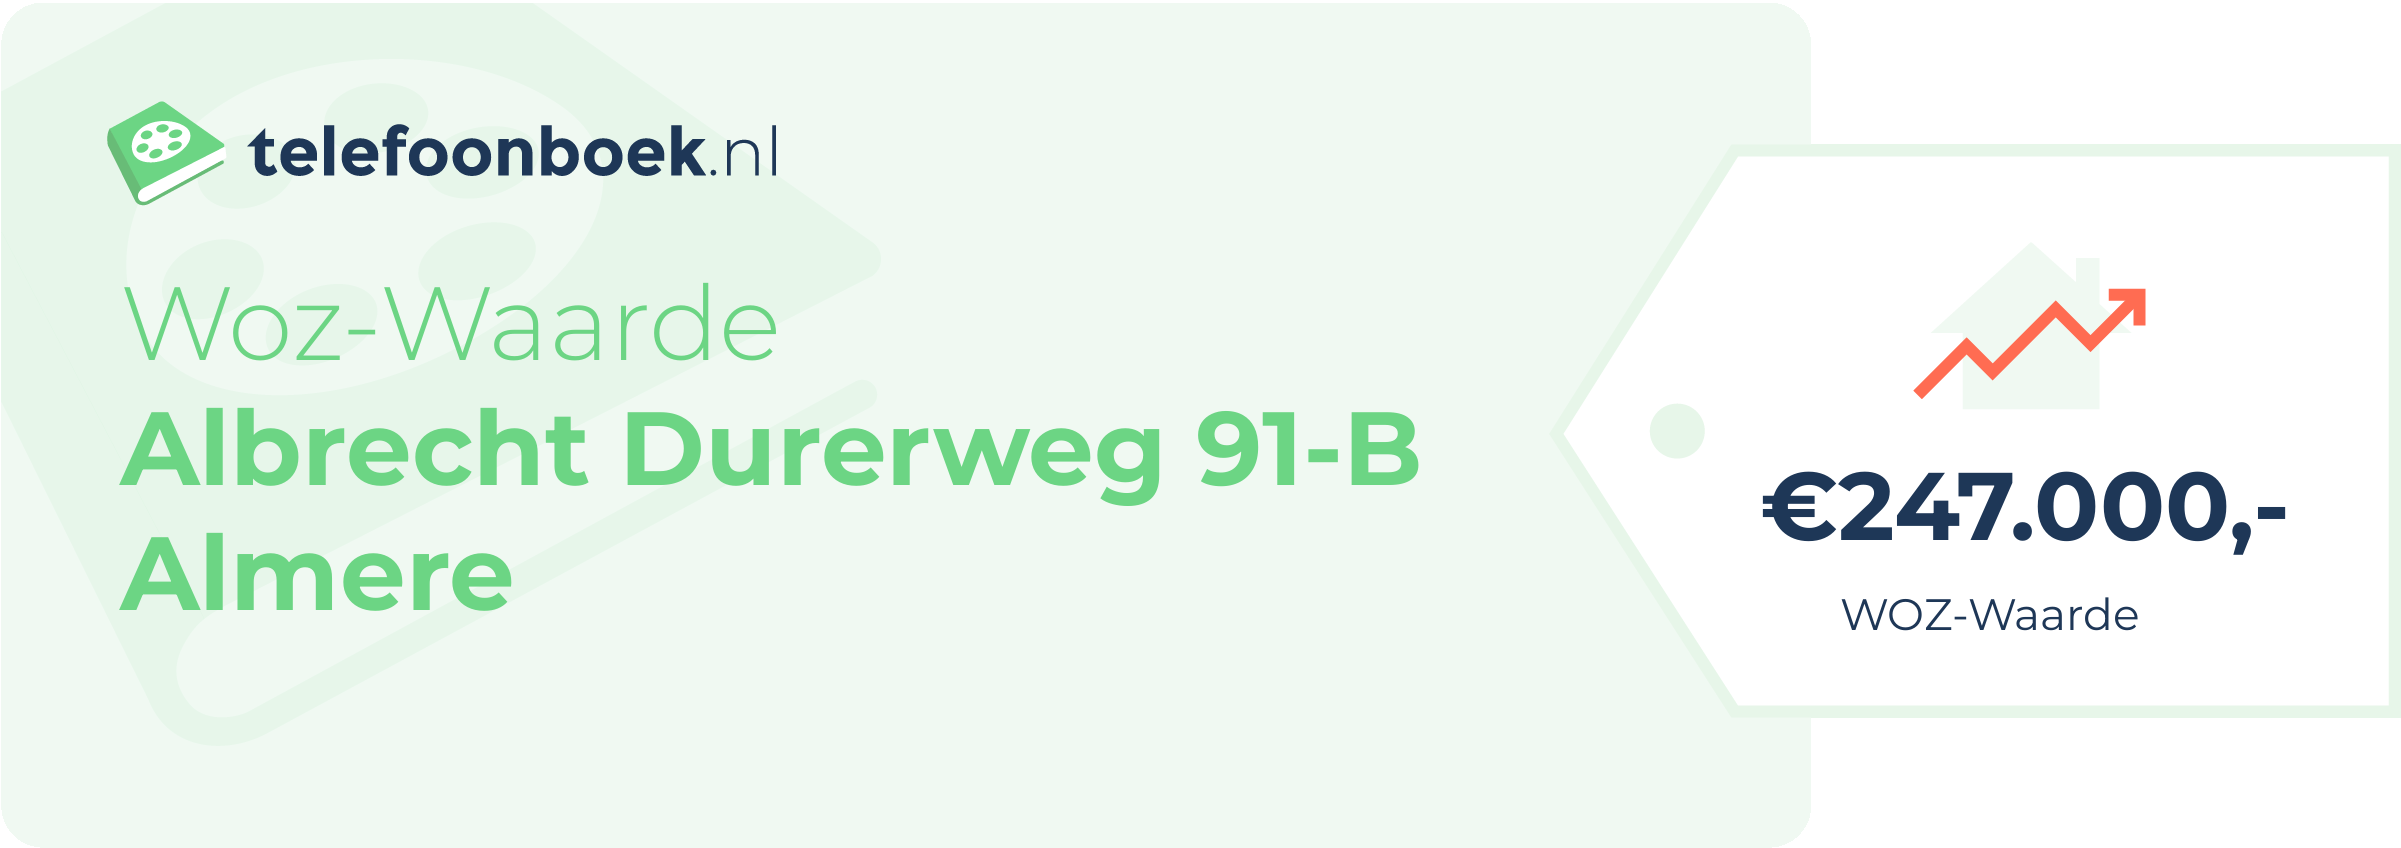 WOZ-waarde Albrecht Durerweg 91-B Almere